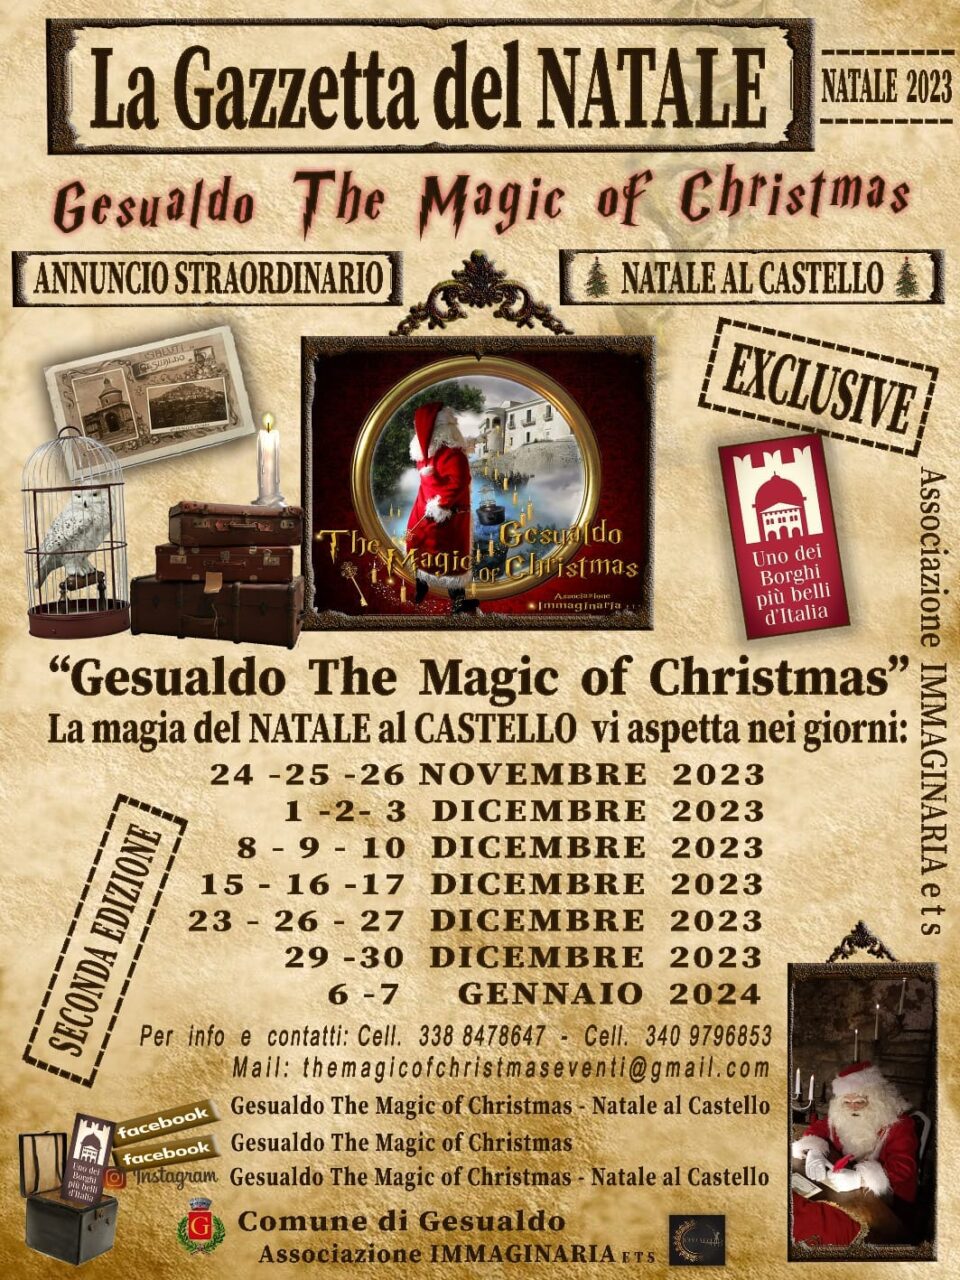 Mercatini di Natale al Castello di Gesualdo 2023: programma, orari e prezzi